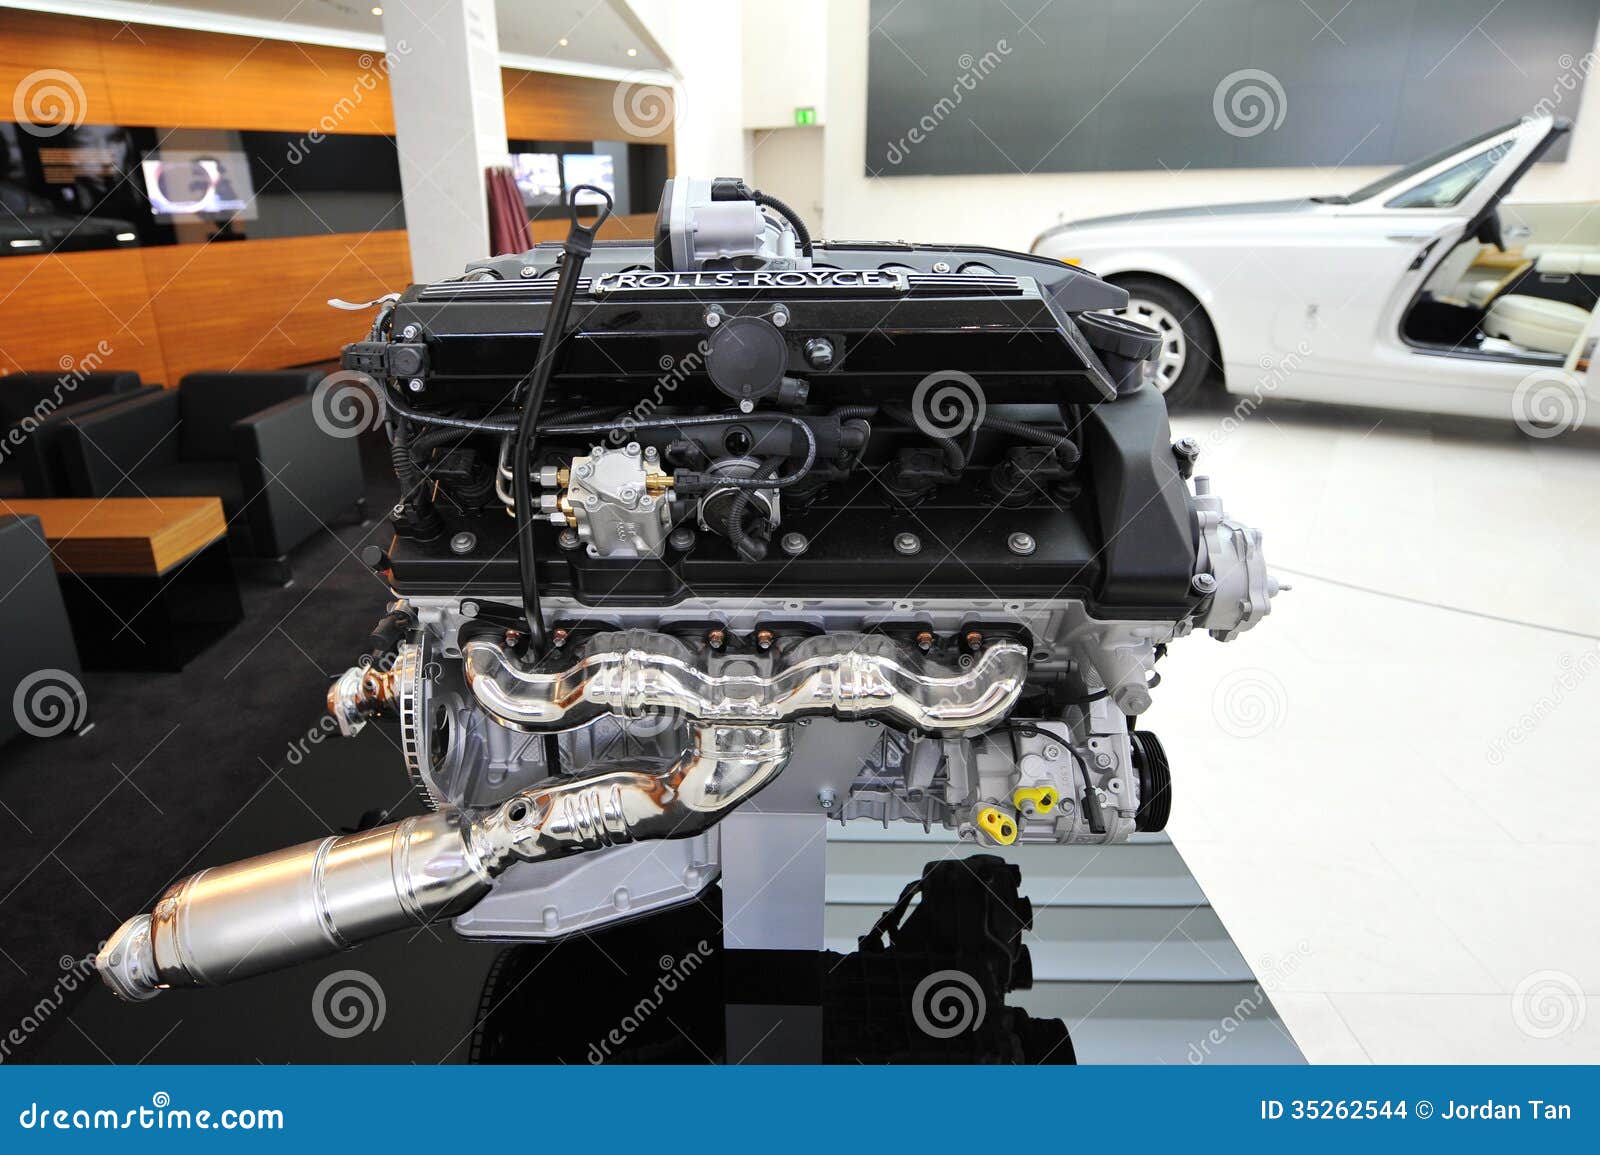 Rolls royce phantom bmw engine #4